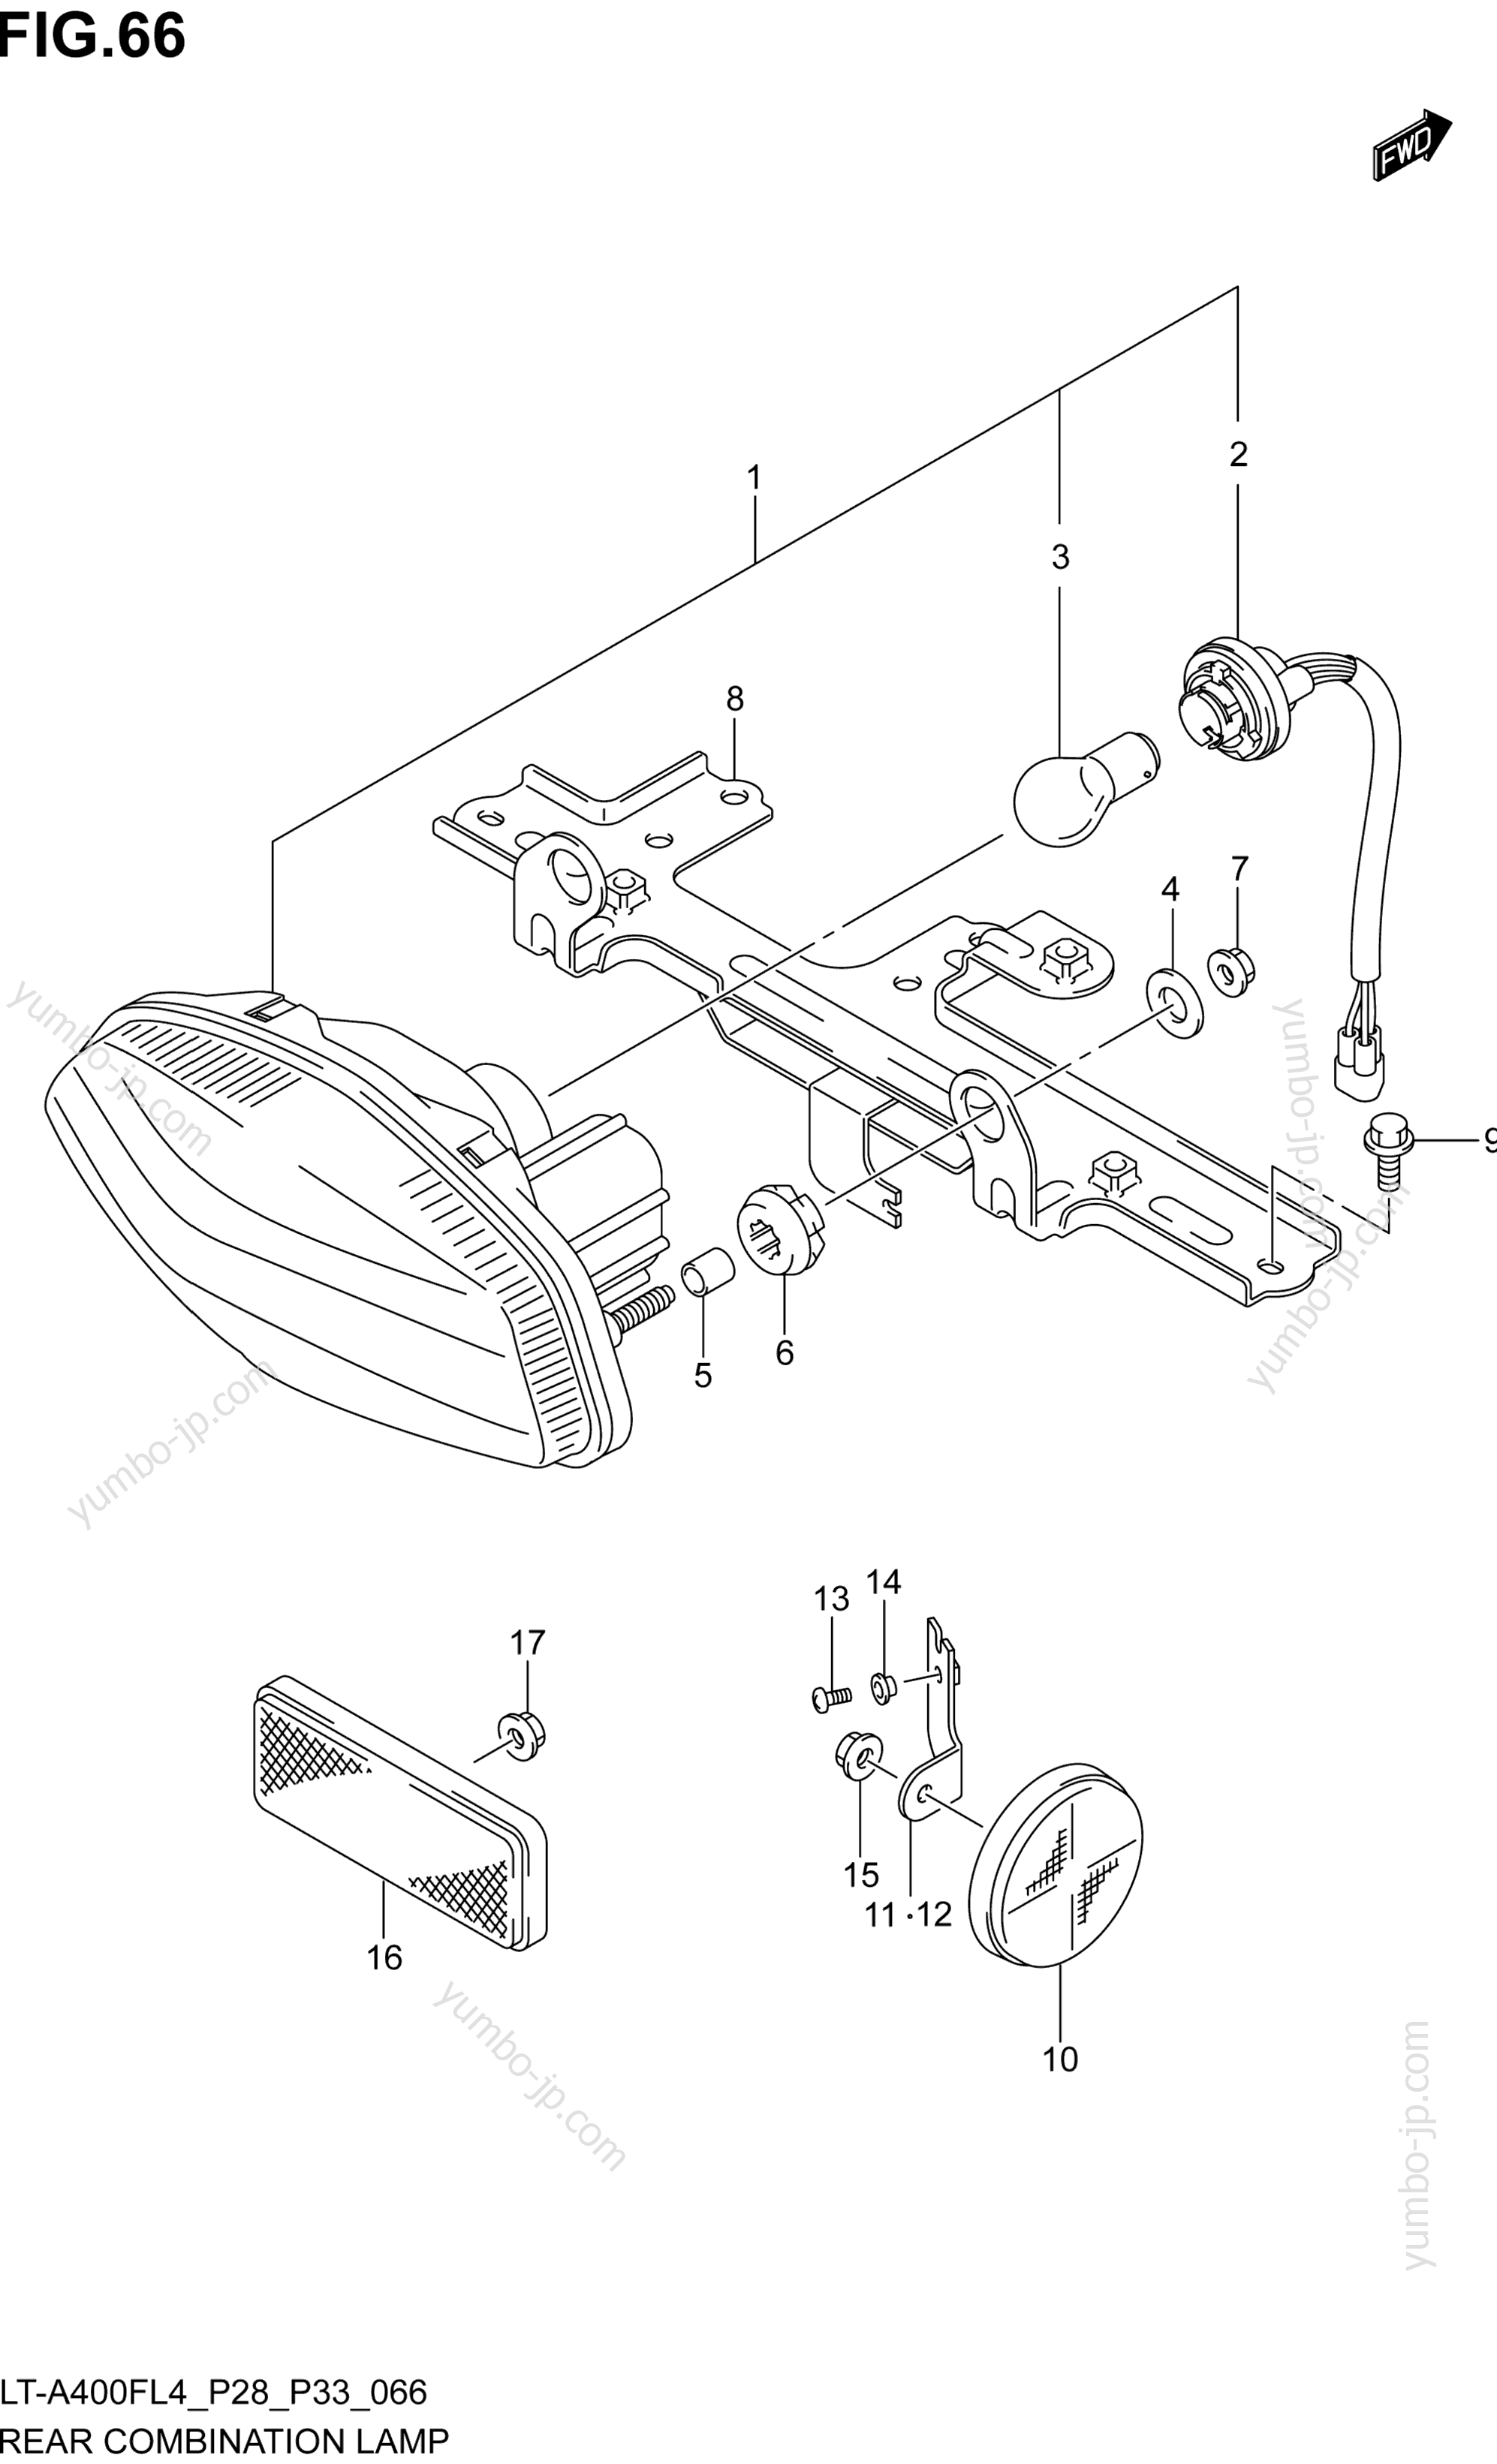 REAR COMBINATION LAMP (LT-A400FZL4 P28) для квадроциклов SUZUKI LT-A400FZ 2014 г.